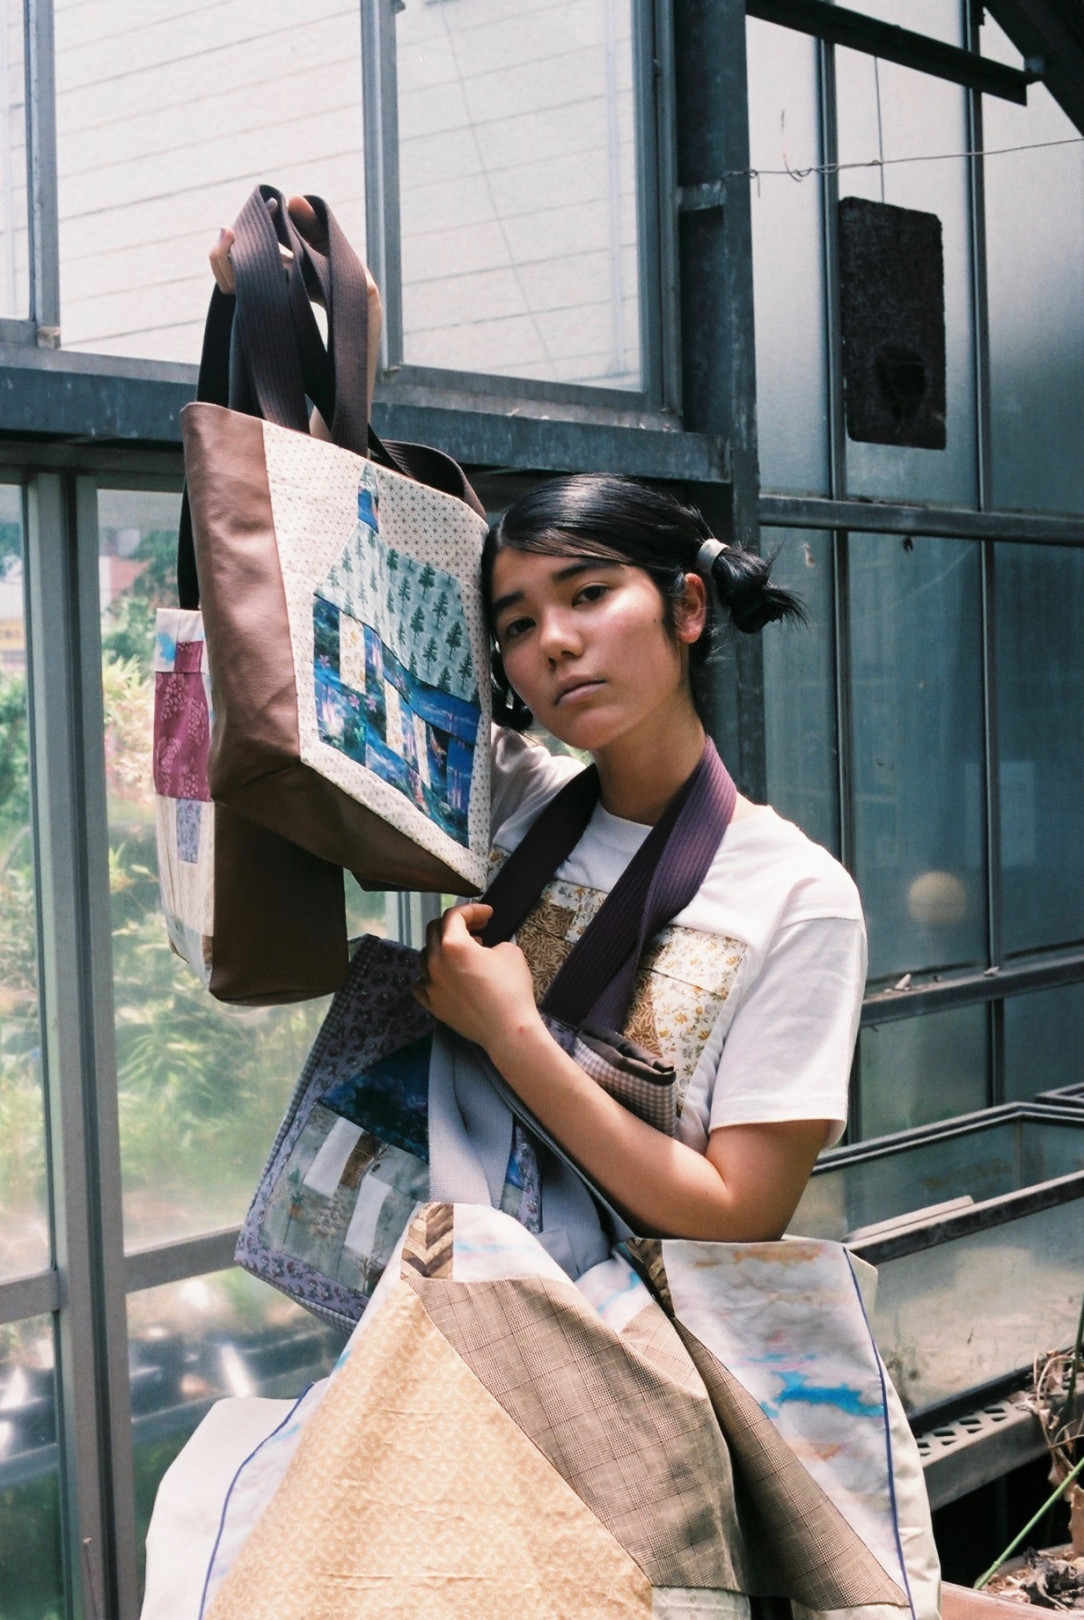 ヨシノハナ写真展「～ハナビラ～わたしがおいかけた風の中」